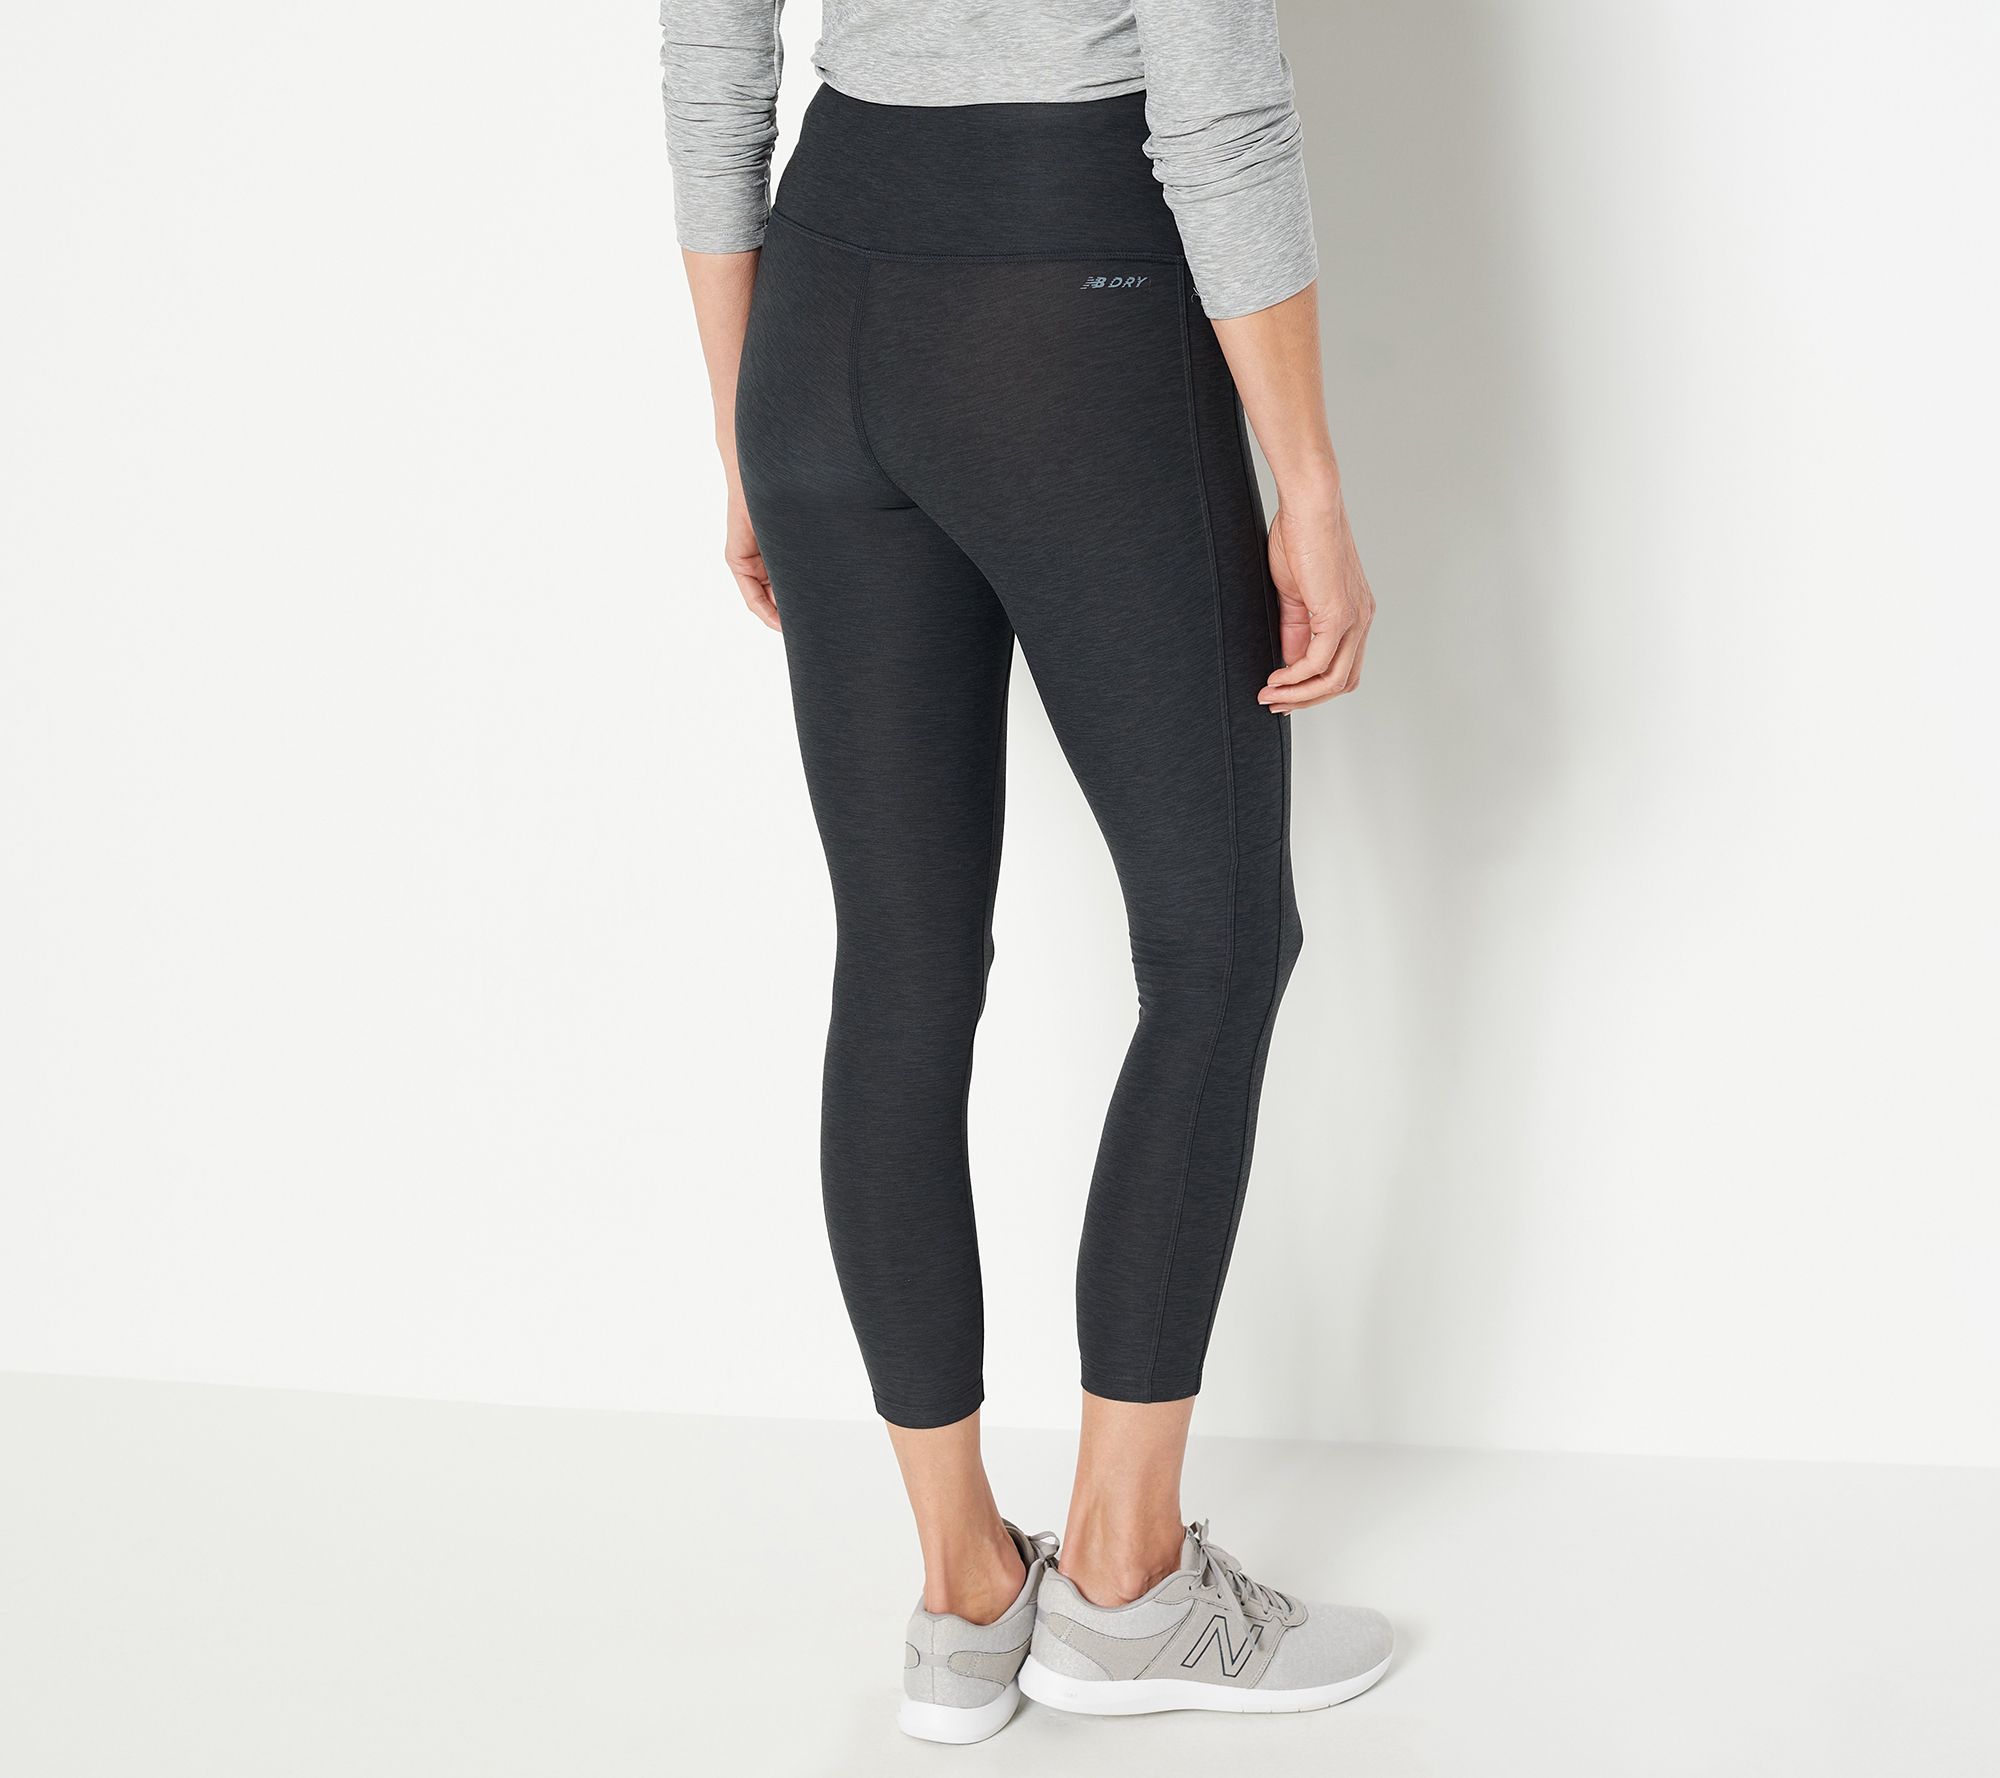 Grey leggings at target - Spandex, Leggings & Yoga Pants - Forum